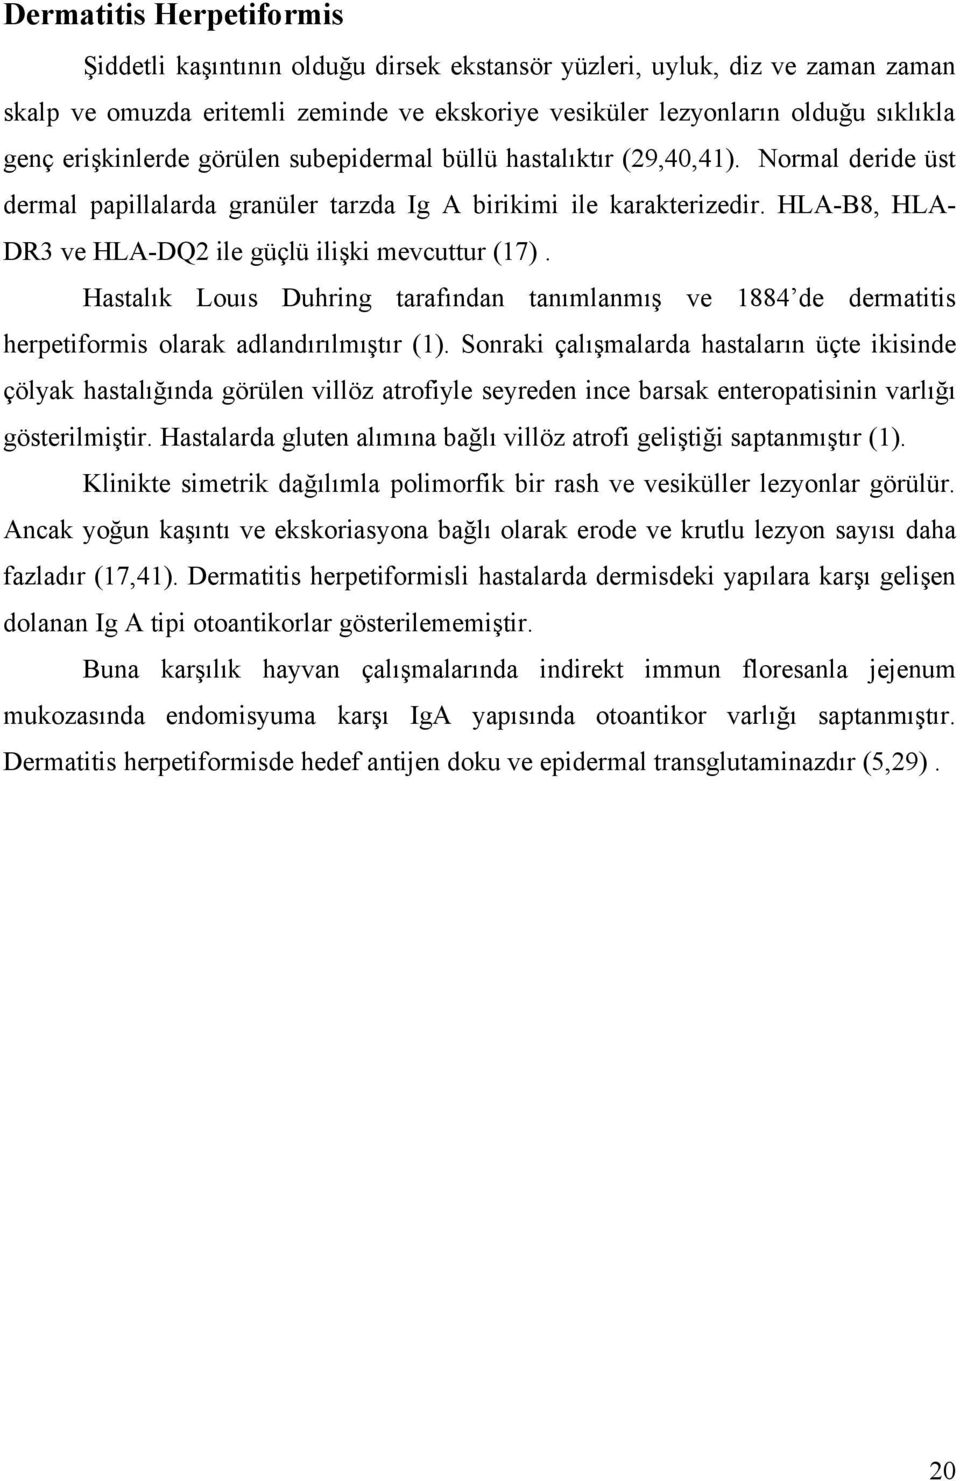 HLAB8, HLADR3 ve HLADQ2 ile güçlü ilişki mevcuttur (17). Hastalık Louıs Duhring tarafından tanımlanmış ve 1884 de dermatitis herpetiformis olarak adlandırılmıştır (1).